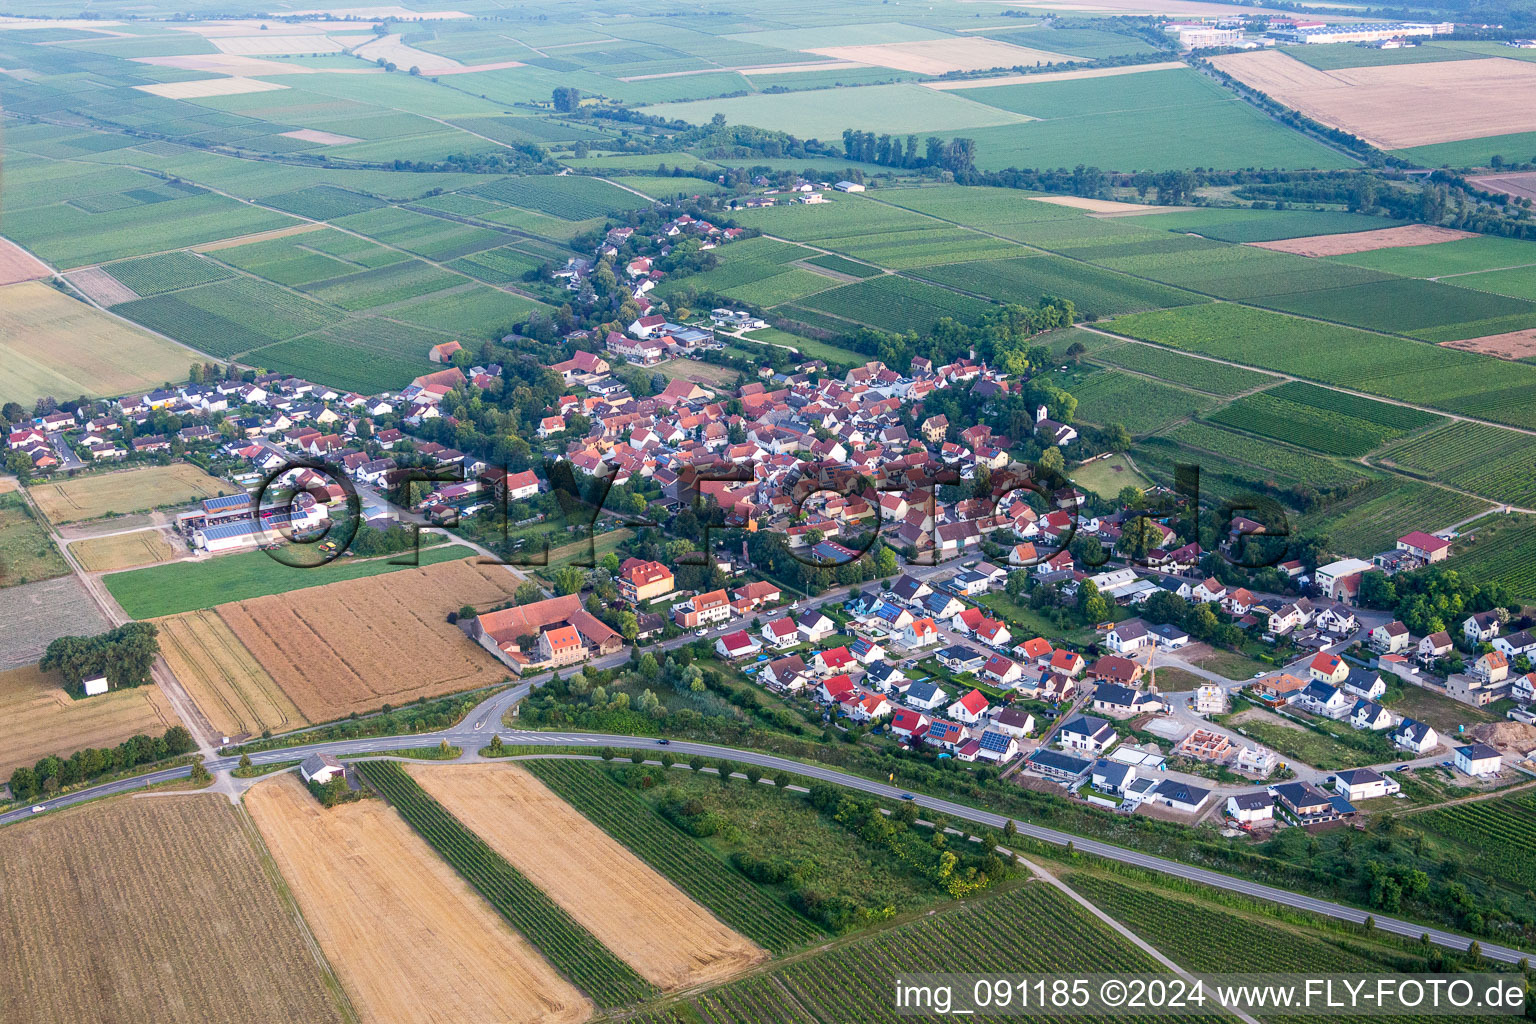 Vue aérienne de Champs agricoles et surfaces utilisables à Hohen-Sülzen dans le département Rhénanie-Palatinat, Allemagne